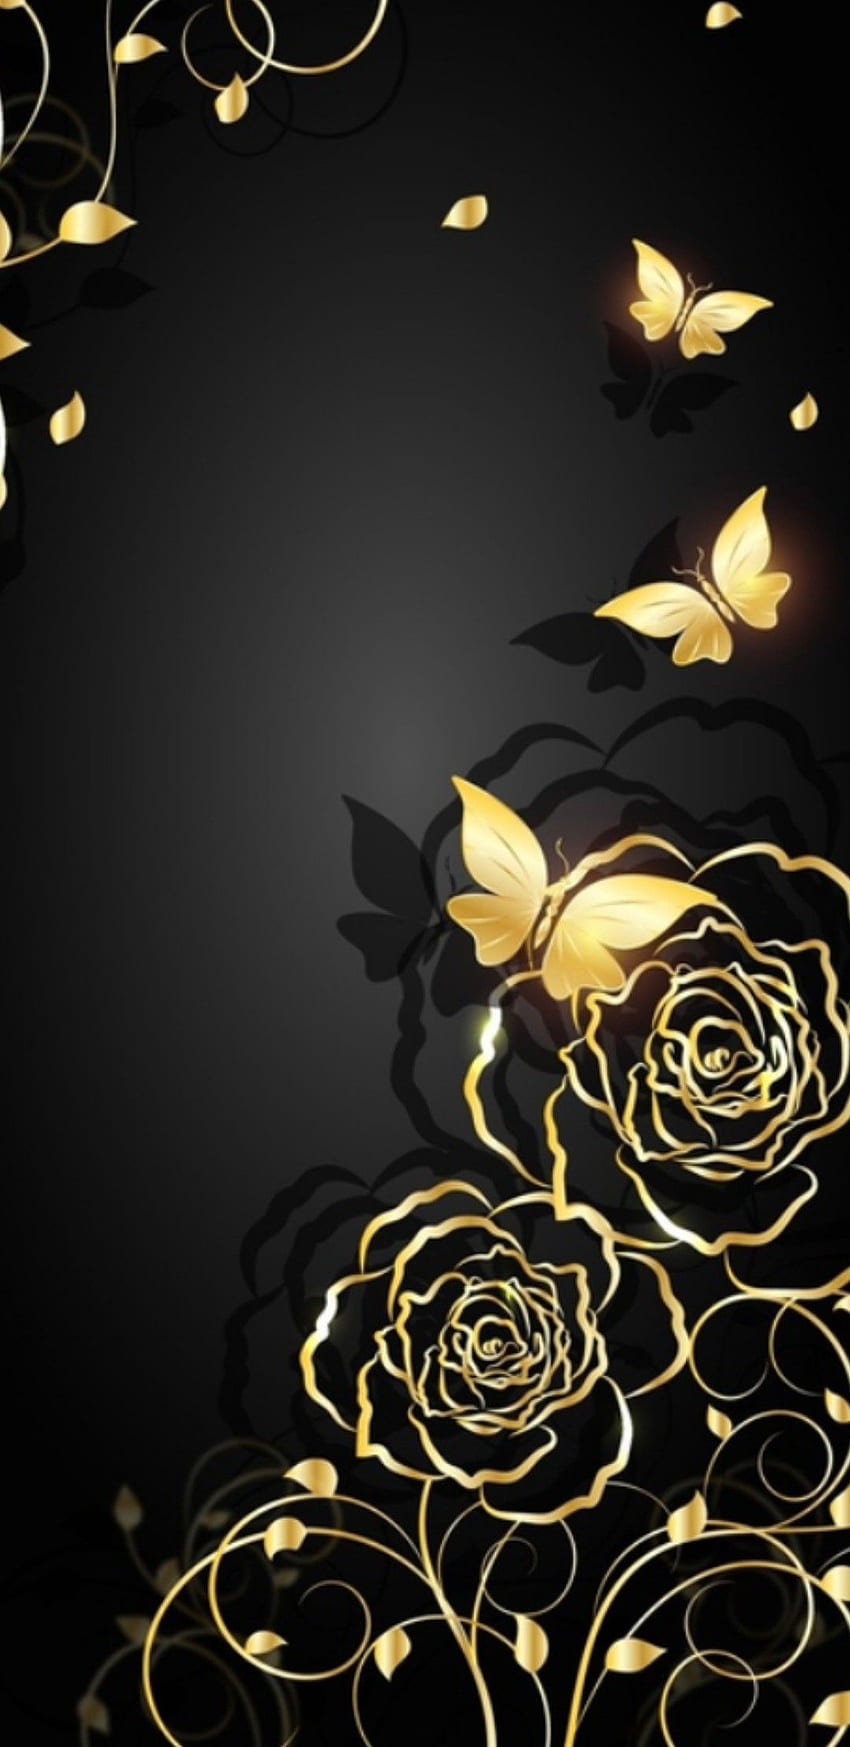 Mawar Mawar Emas Bunga Kuning, Mawar Hitam dan Kuning wallpaper ponsel HD